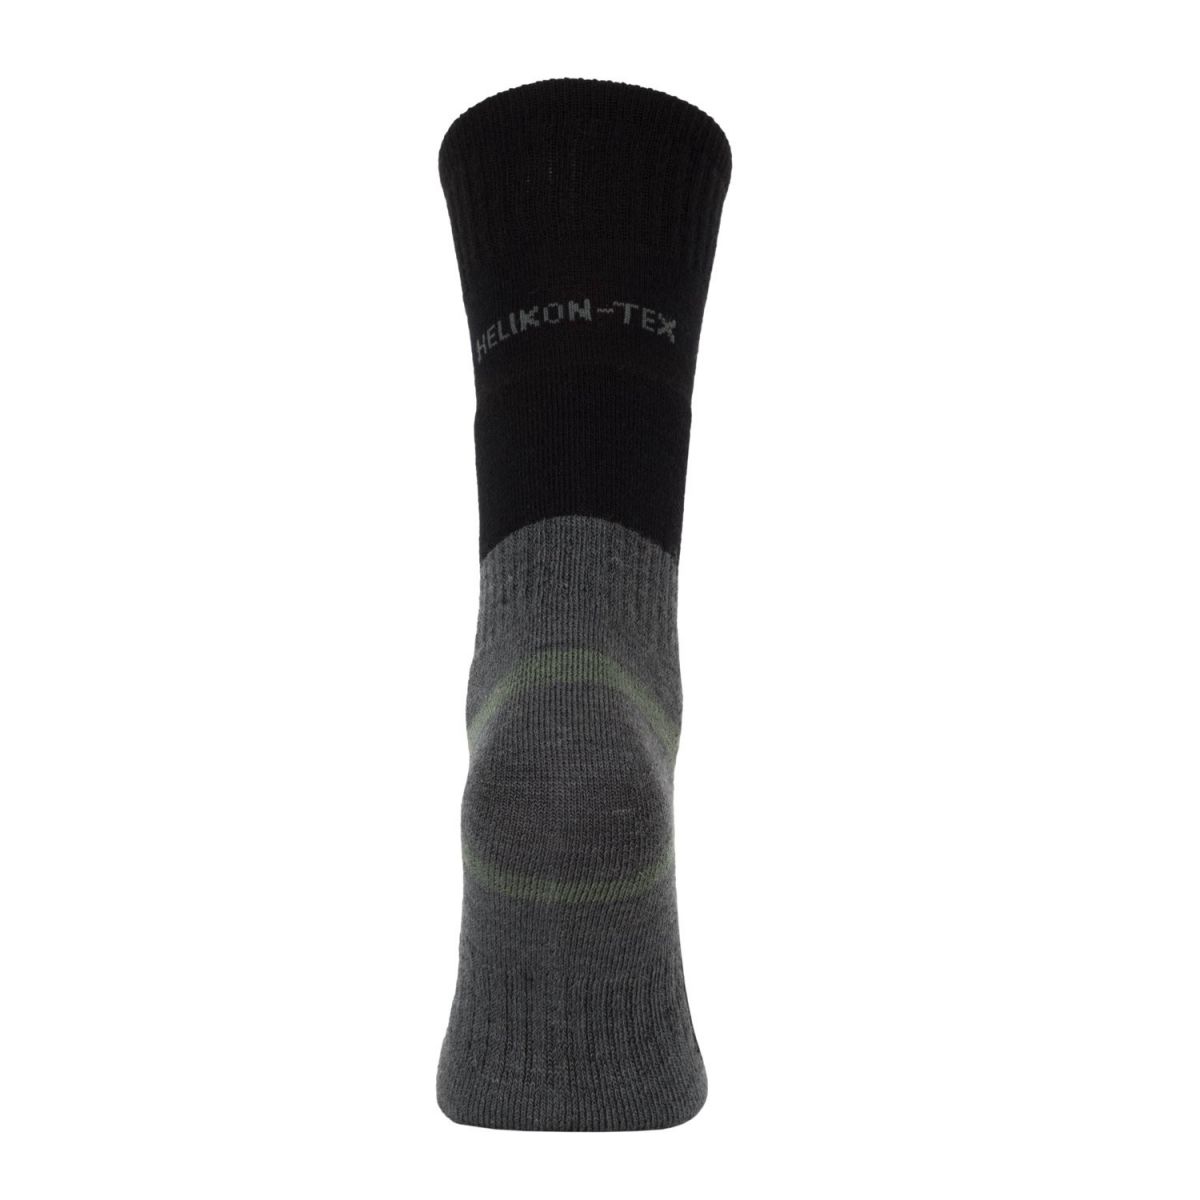 Носки треккинговые Helikon-Tex Mediumweight socks черно-серые с шерстью мериноса. Размер М 2